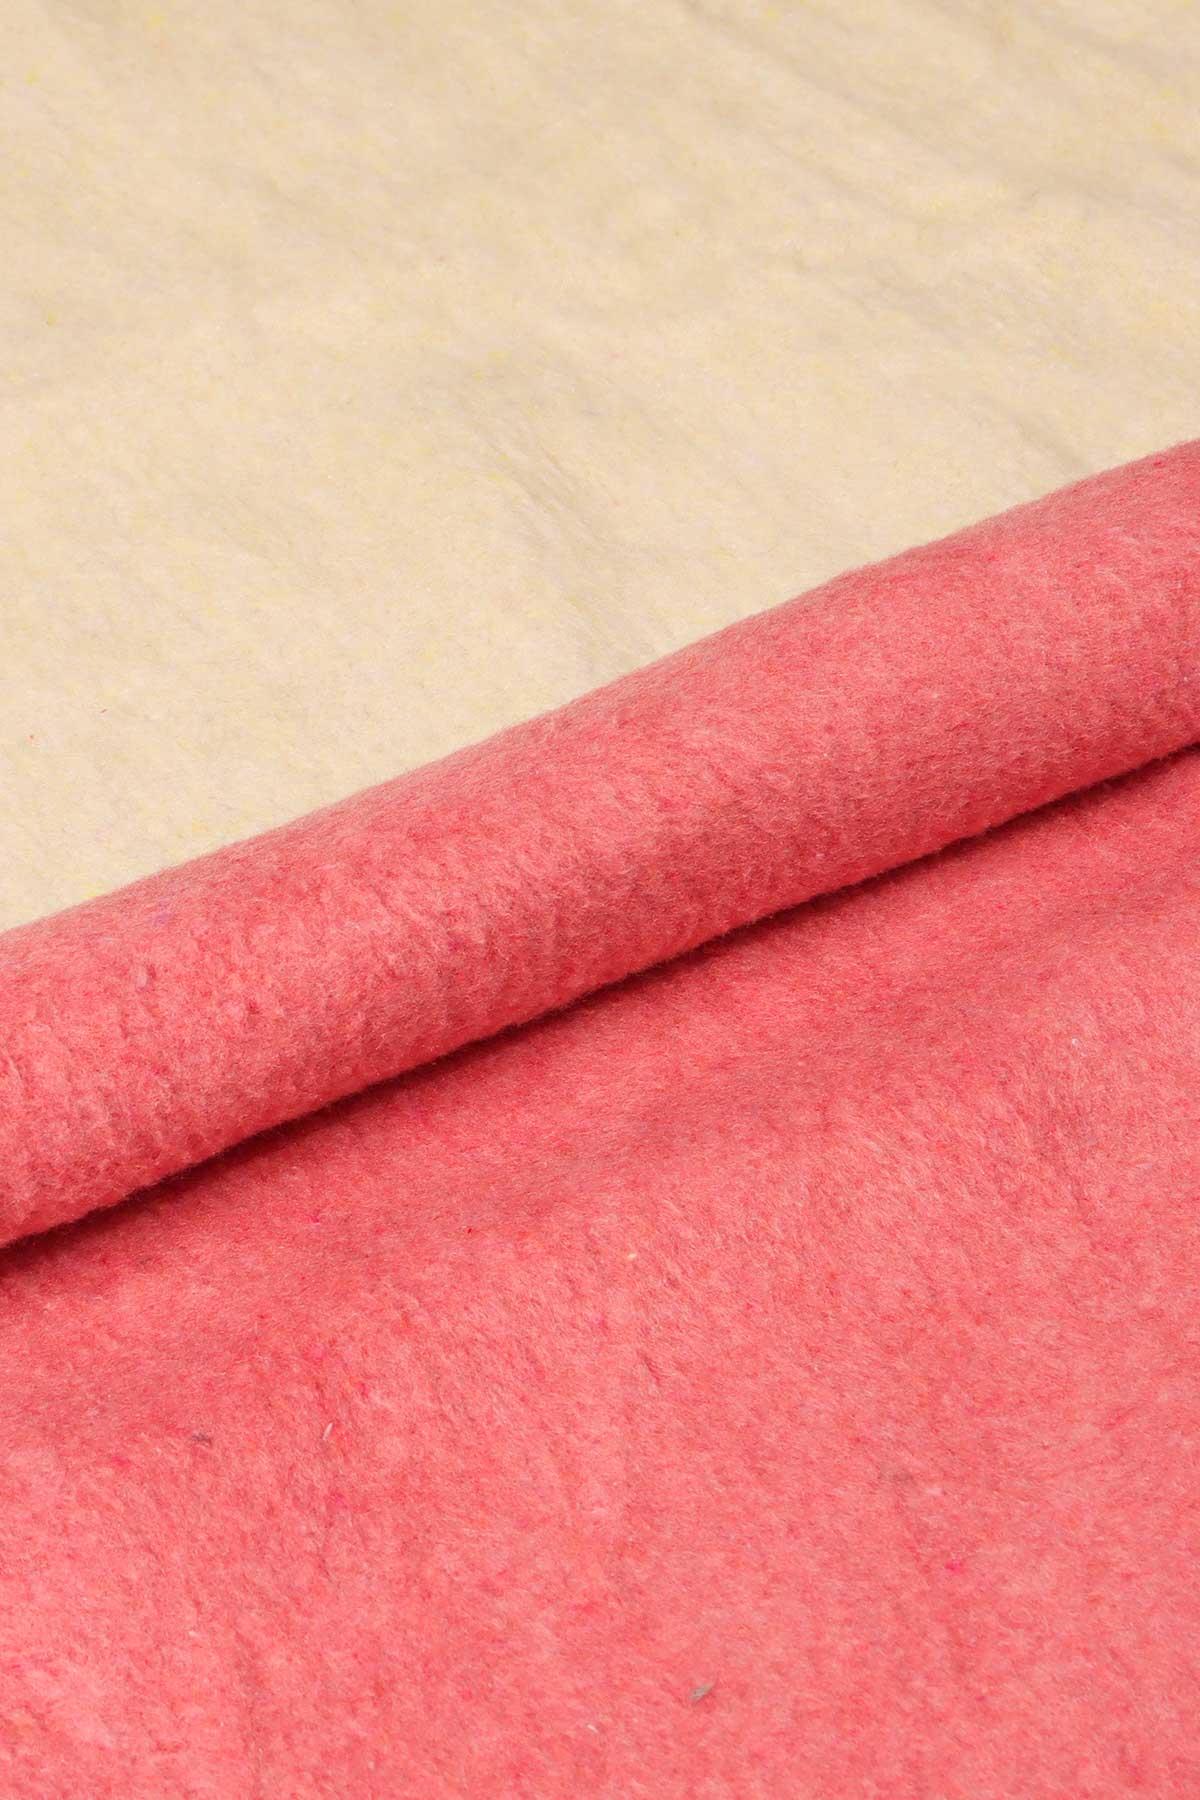 yesilhome tek kisilik pamuk battaniye cift tarafli battaniye pembe krem 120034.jpg